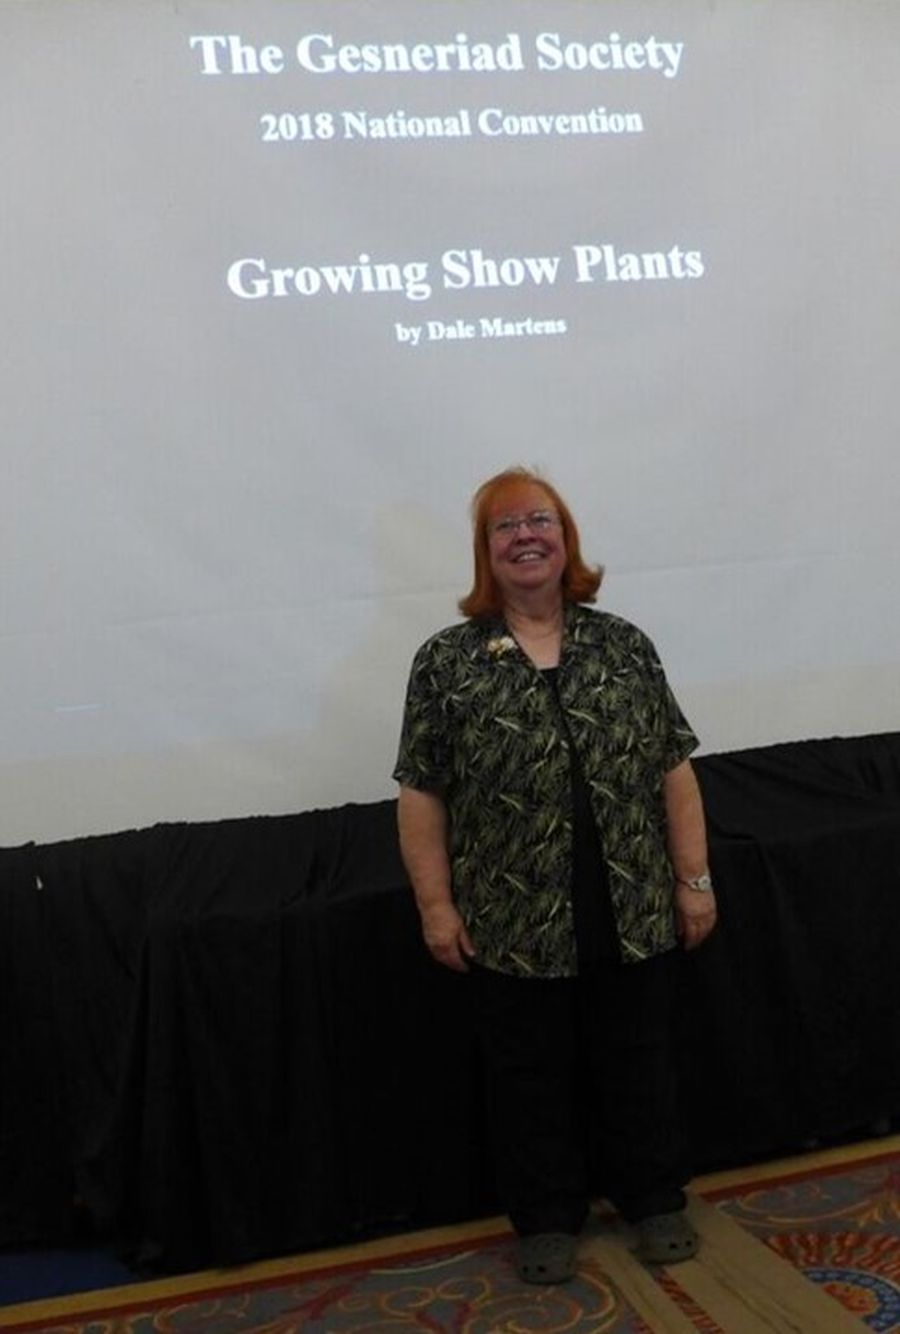 Dale Martens’ lecture “Growing Show Plants”